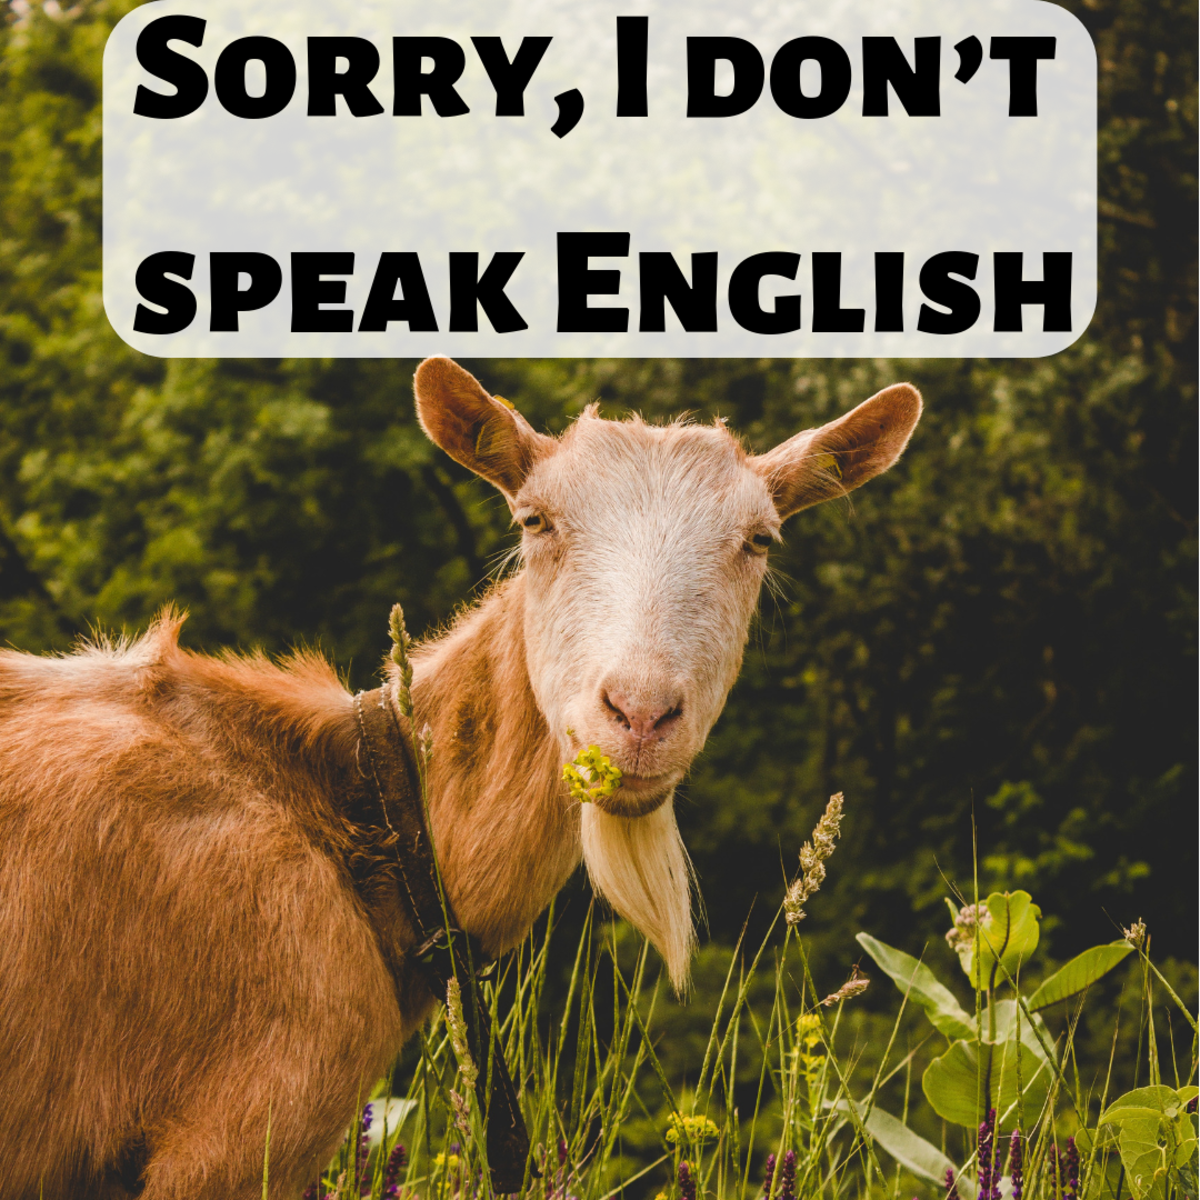 Sorry, I don't speak English.